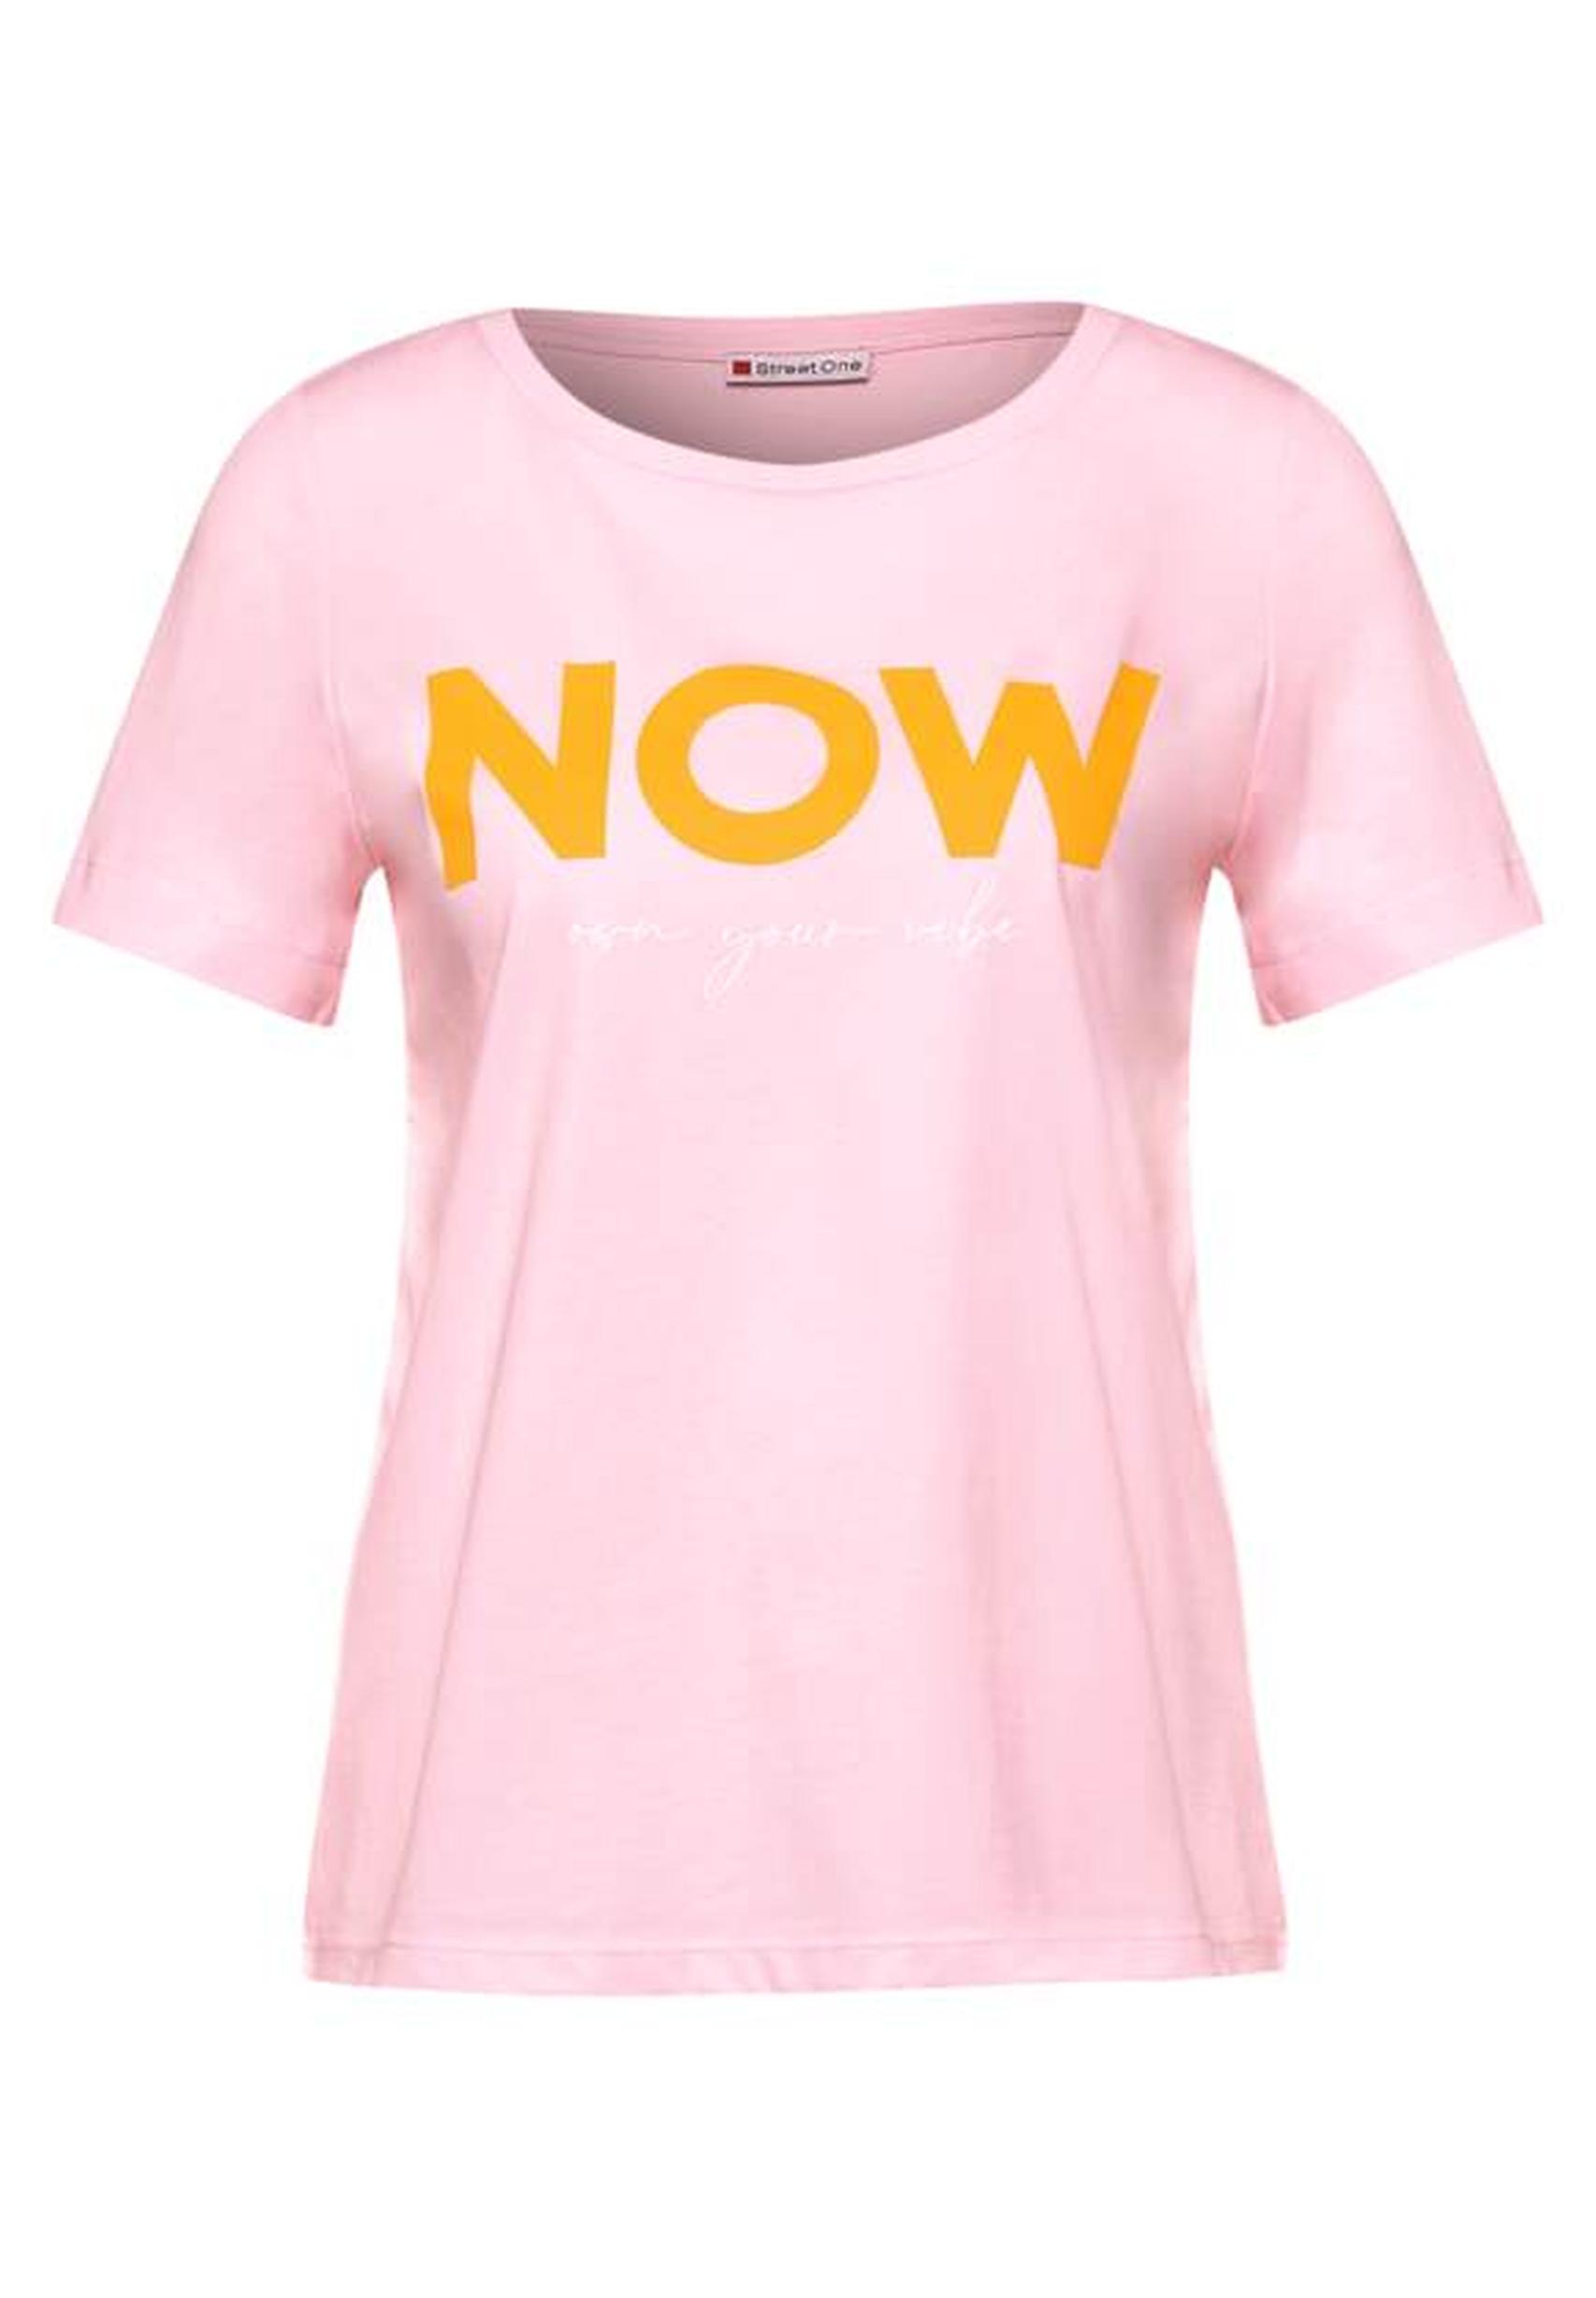 Trendiges T-Shirt aus der Kollektion von Street One in icy rose - 317605